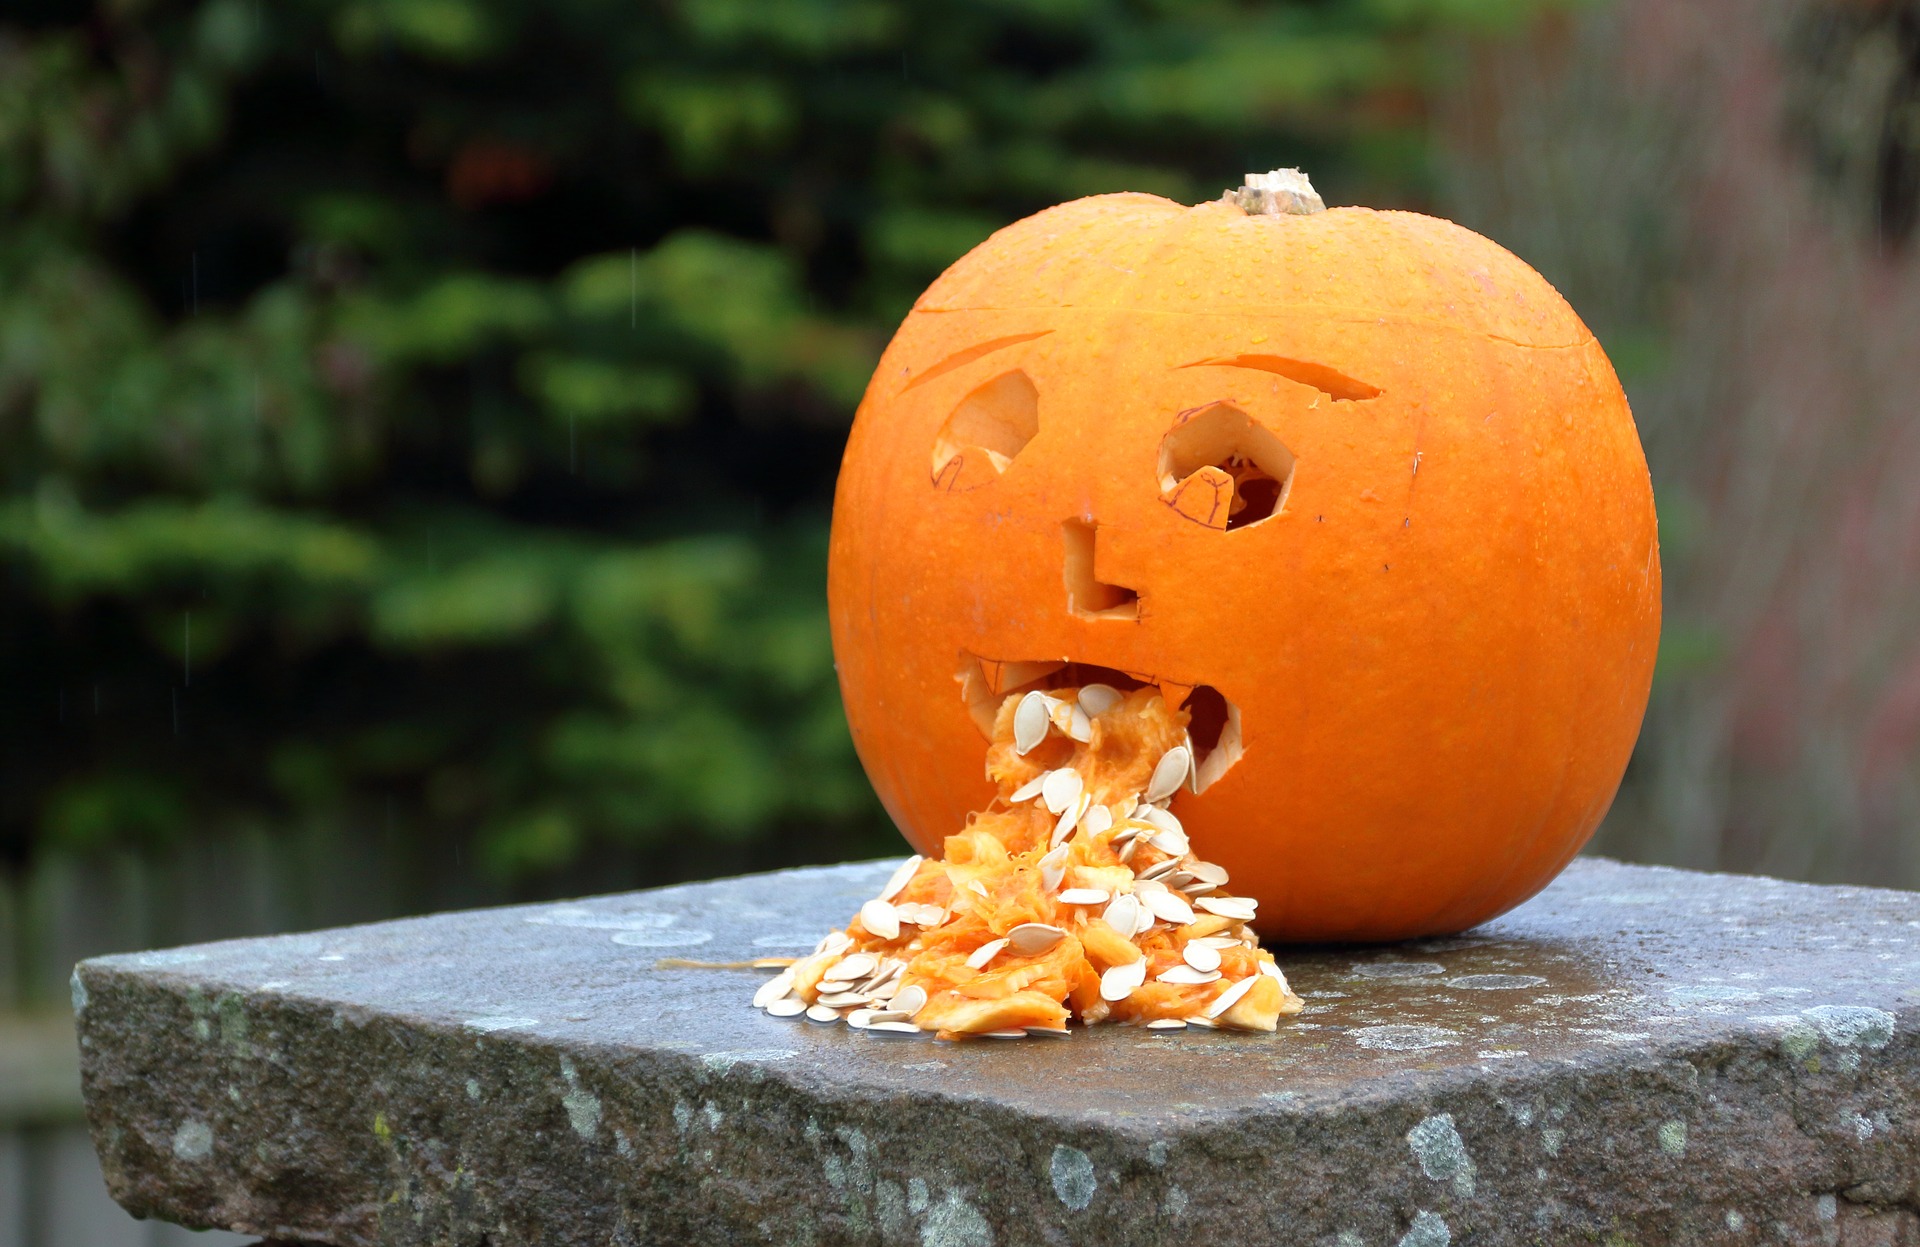 pumpkin vomiting seeds